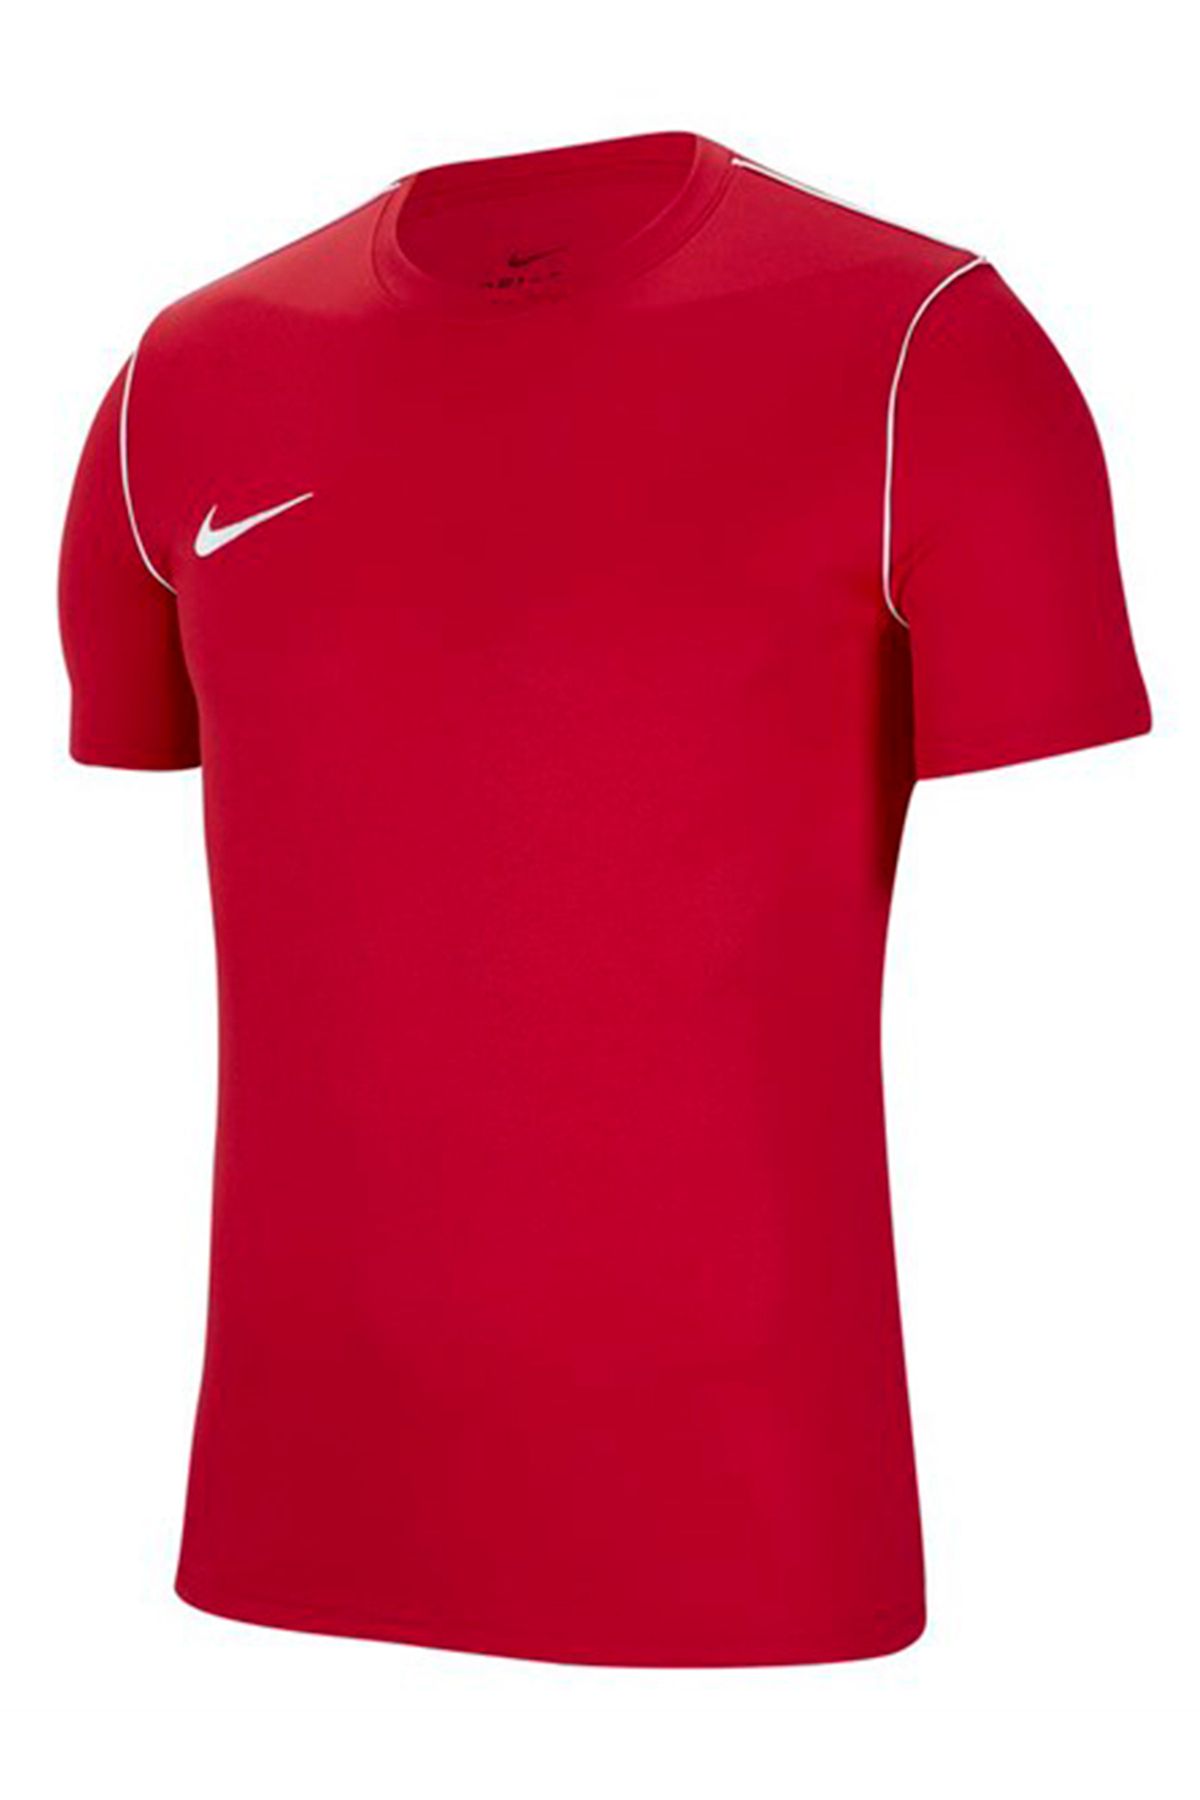 Nike Bv6883-657 Nk Dry Park20 Top Ss Erkek T-shirt